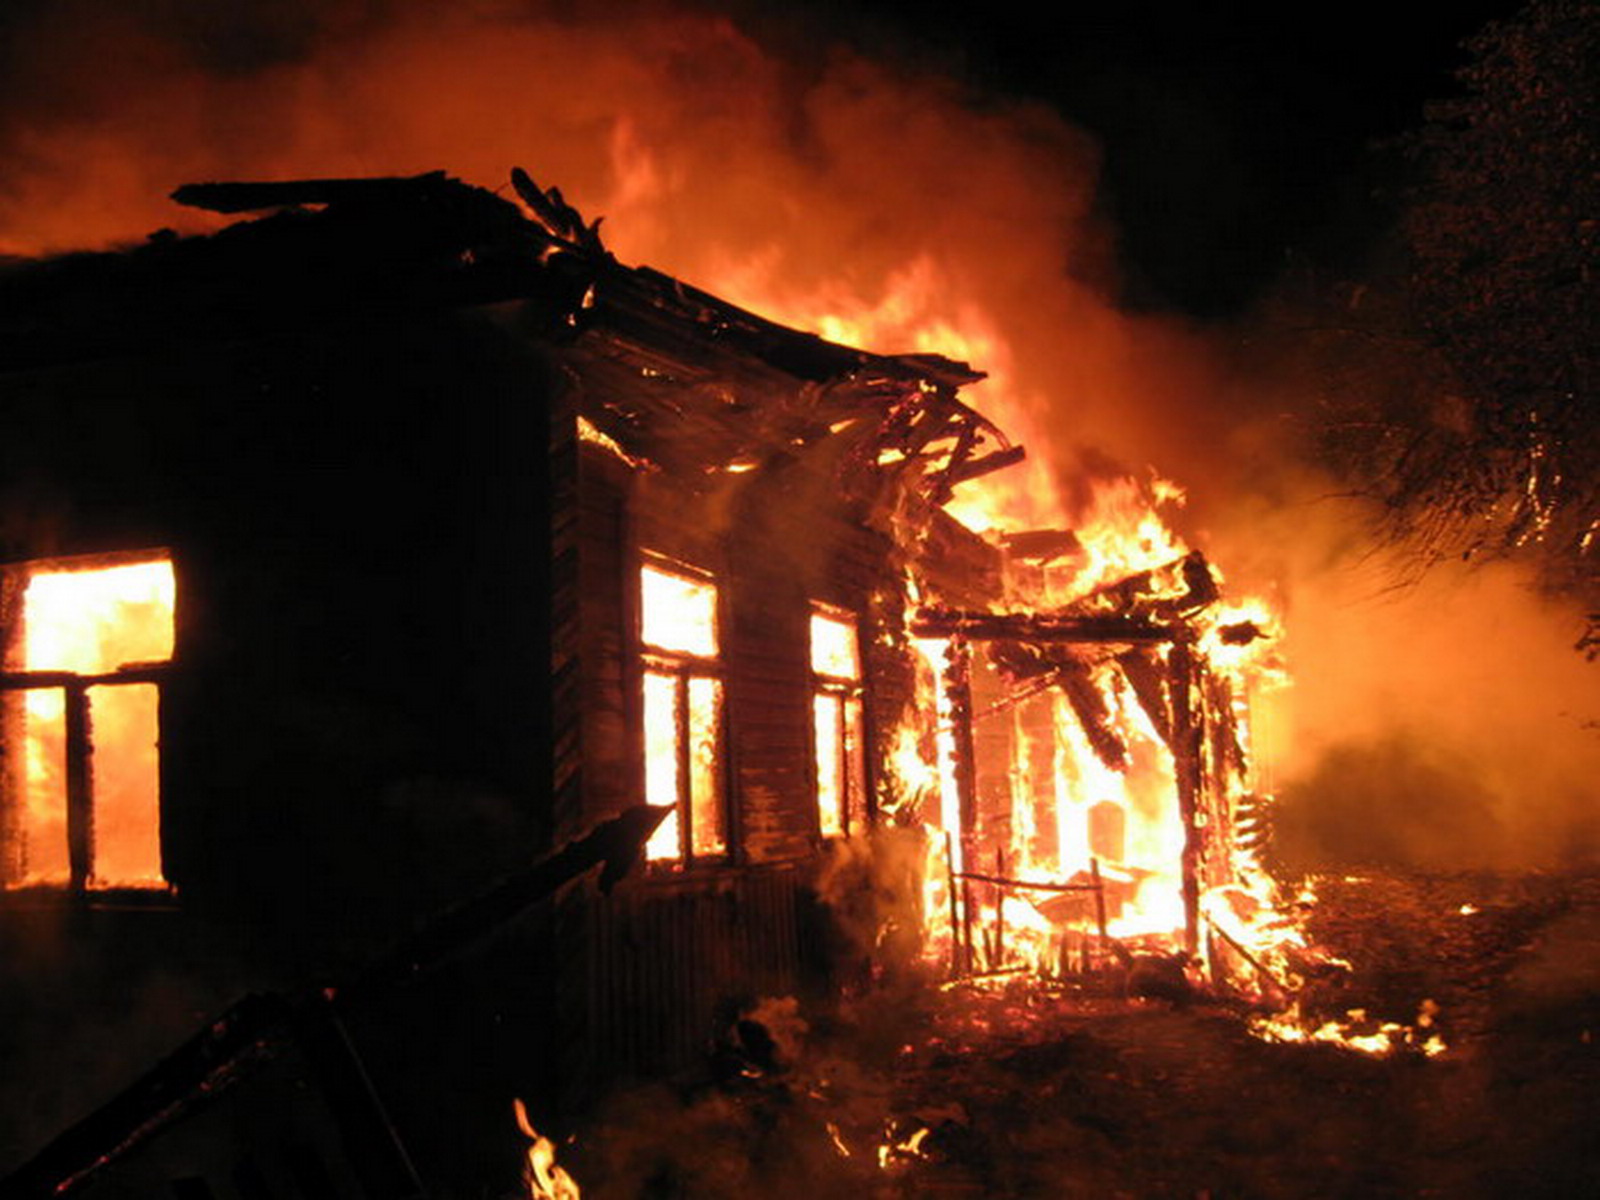 Вчера, 18 января, около 15:27 возник пожар в надворной постройке по адресу: г. Рахов, вул. Вербник. 